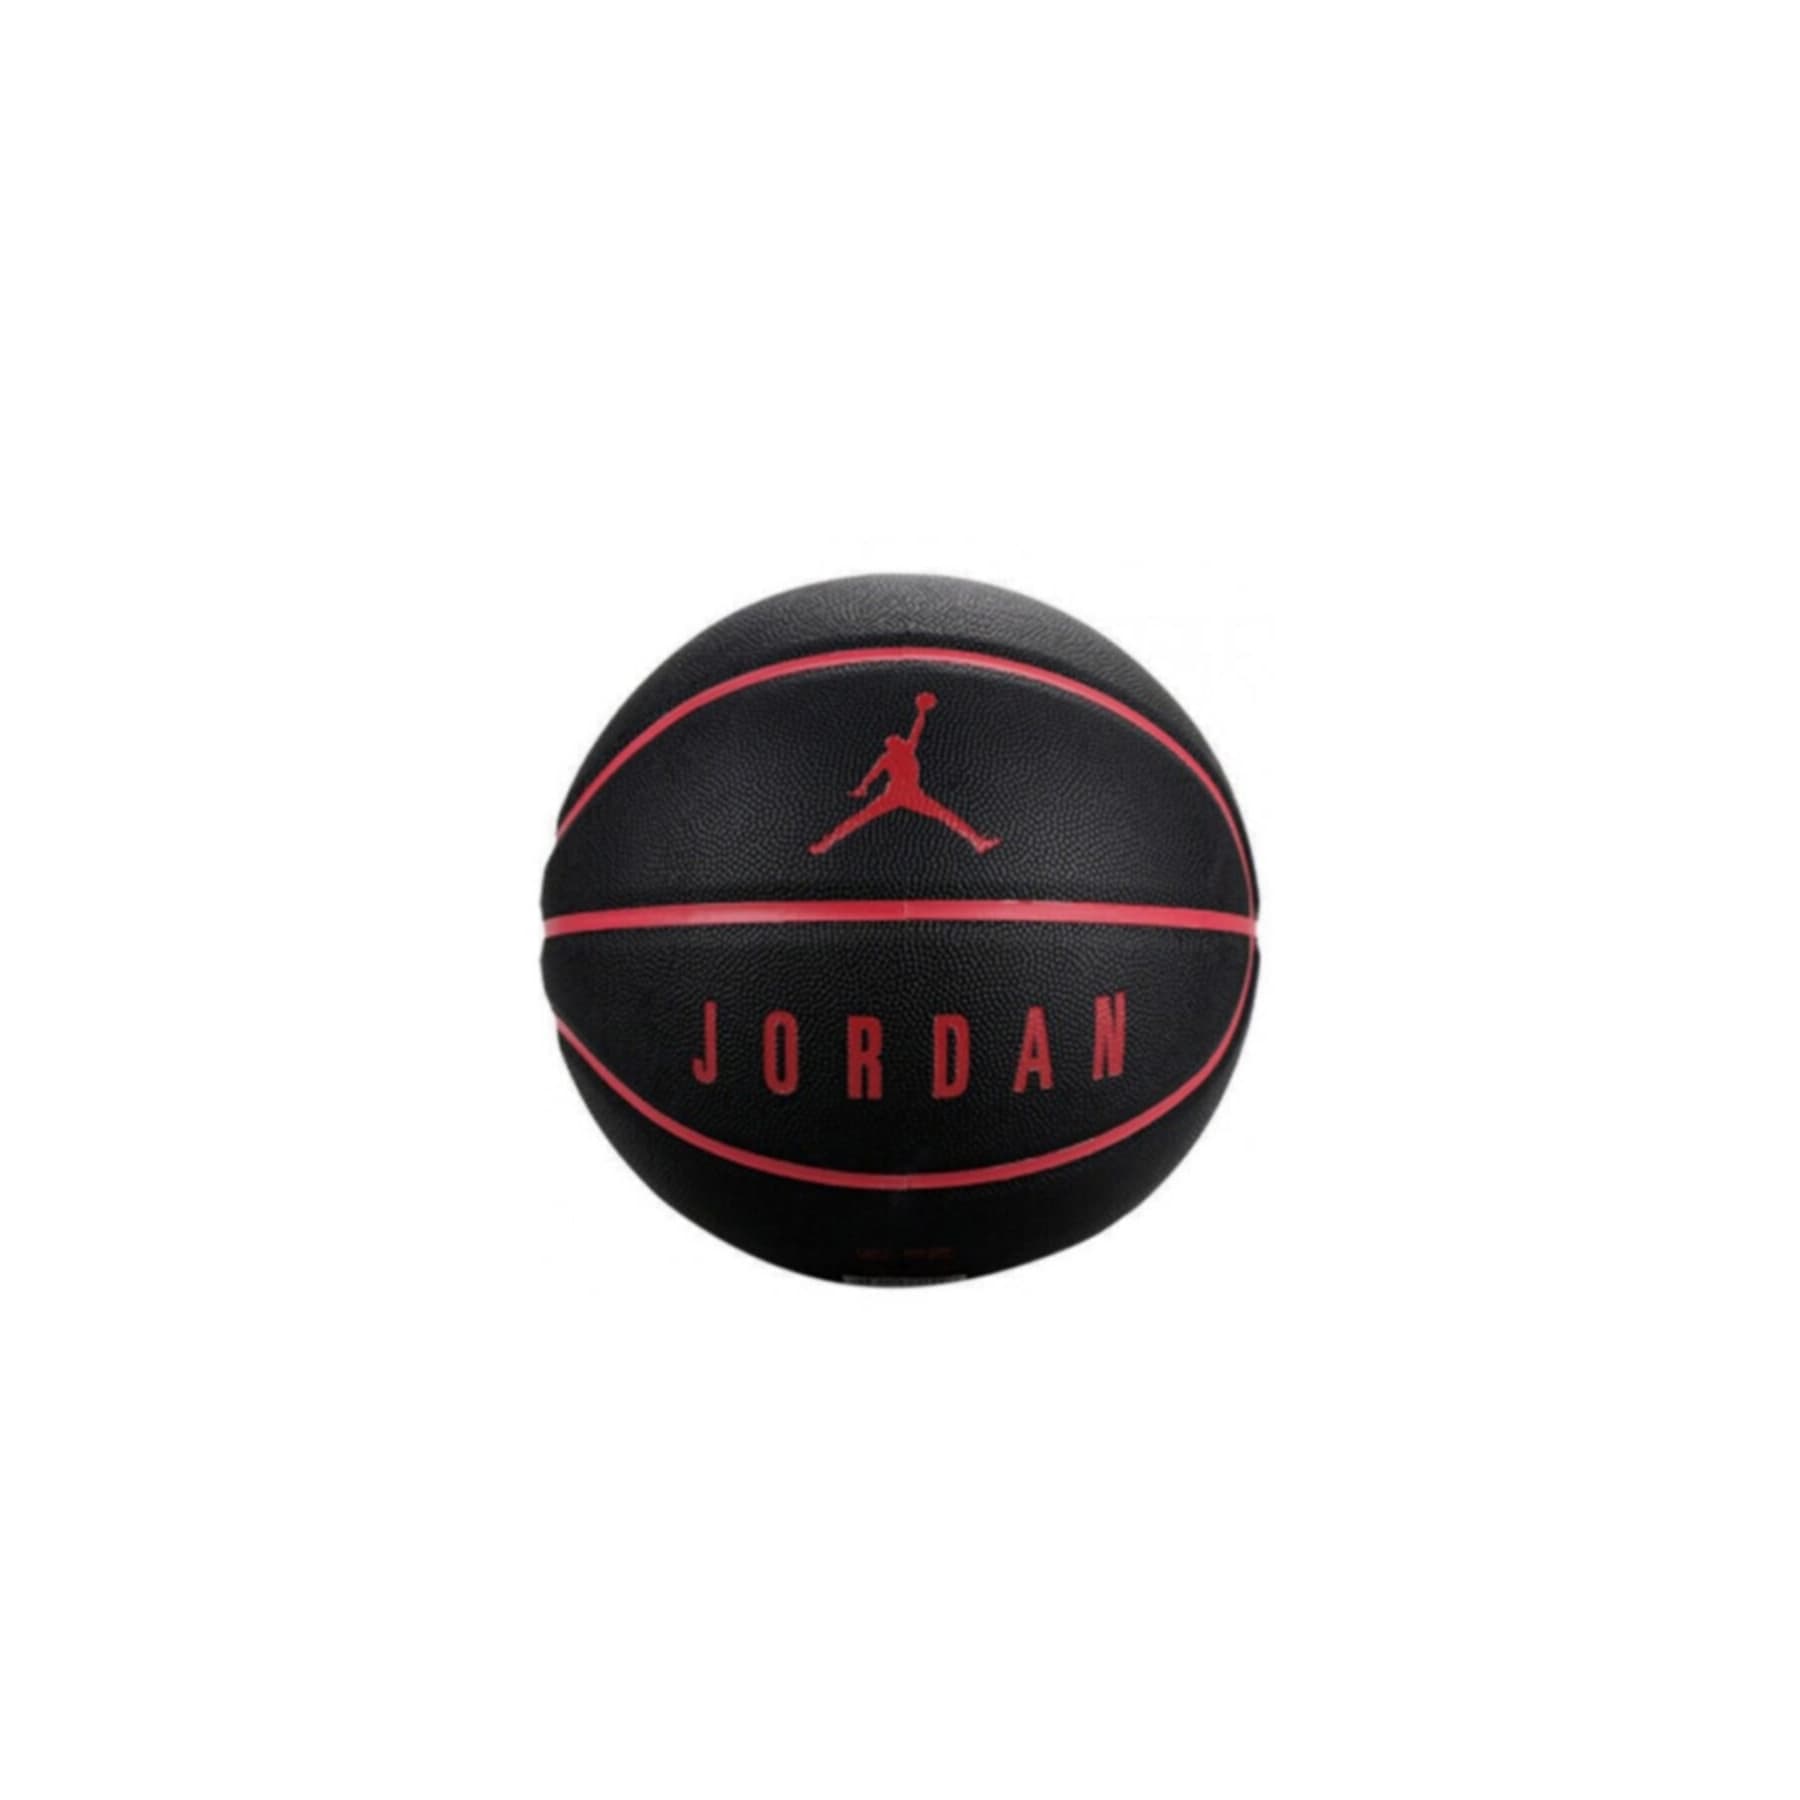 Jordan Ultimate 8P Basketbol Topu (J.KI.12.053.07)